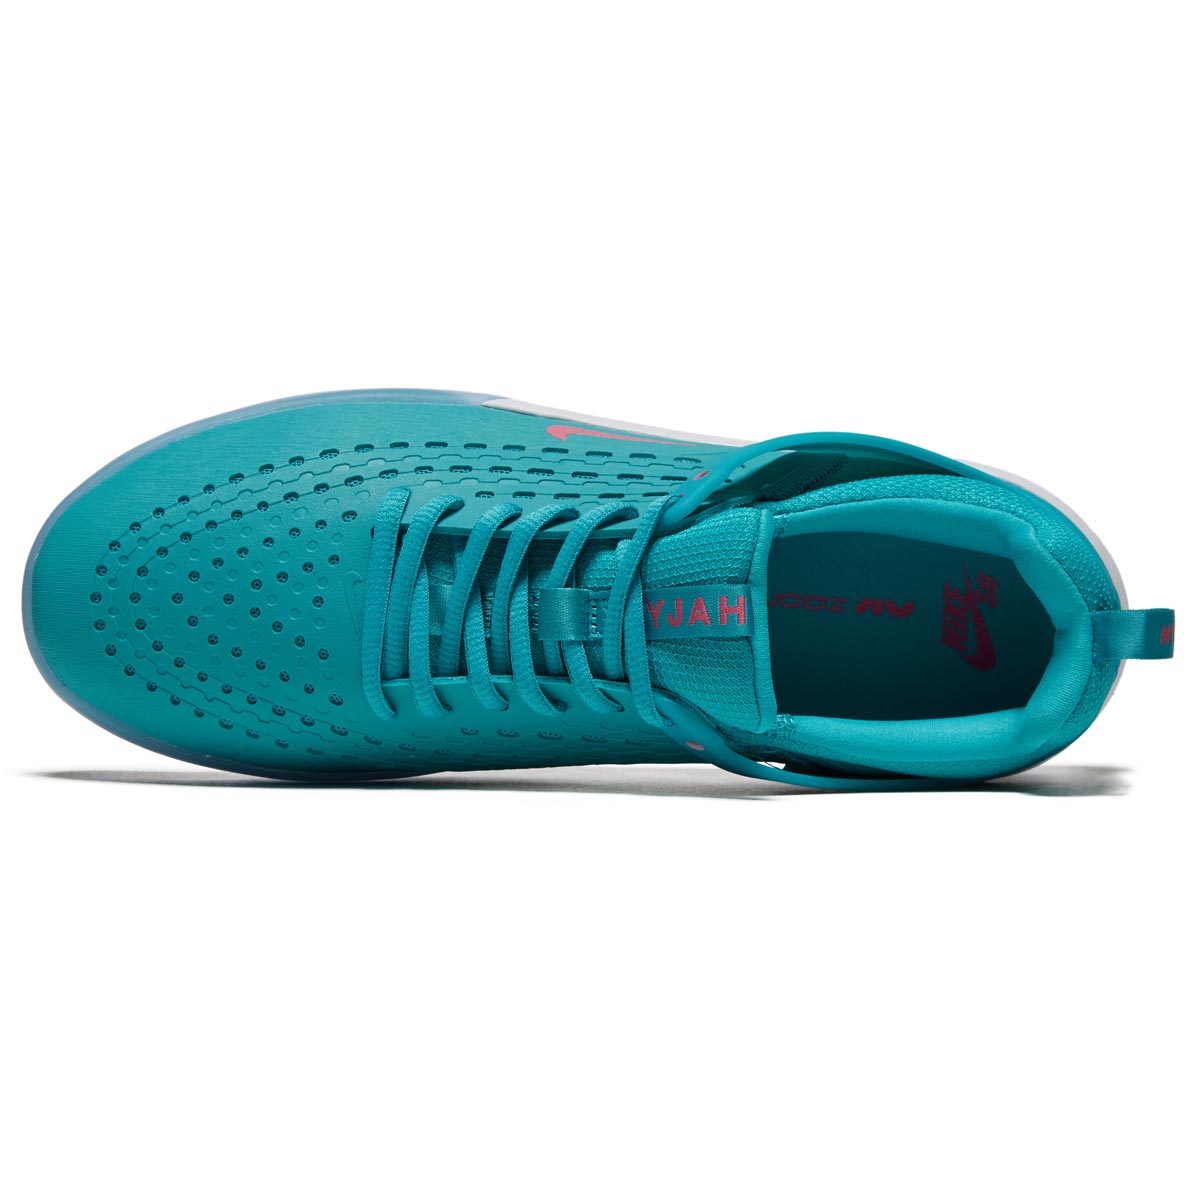 Nike SB Zoom Nyjah 3 Shoes - Dusty Cactus/Pinksicle/Dusty Cactus image 3